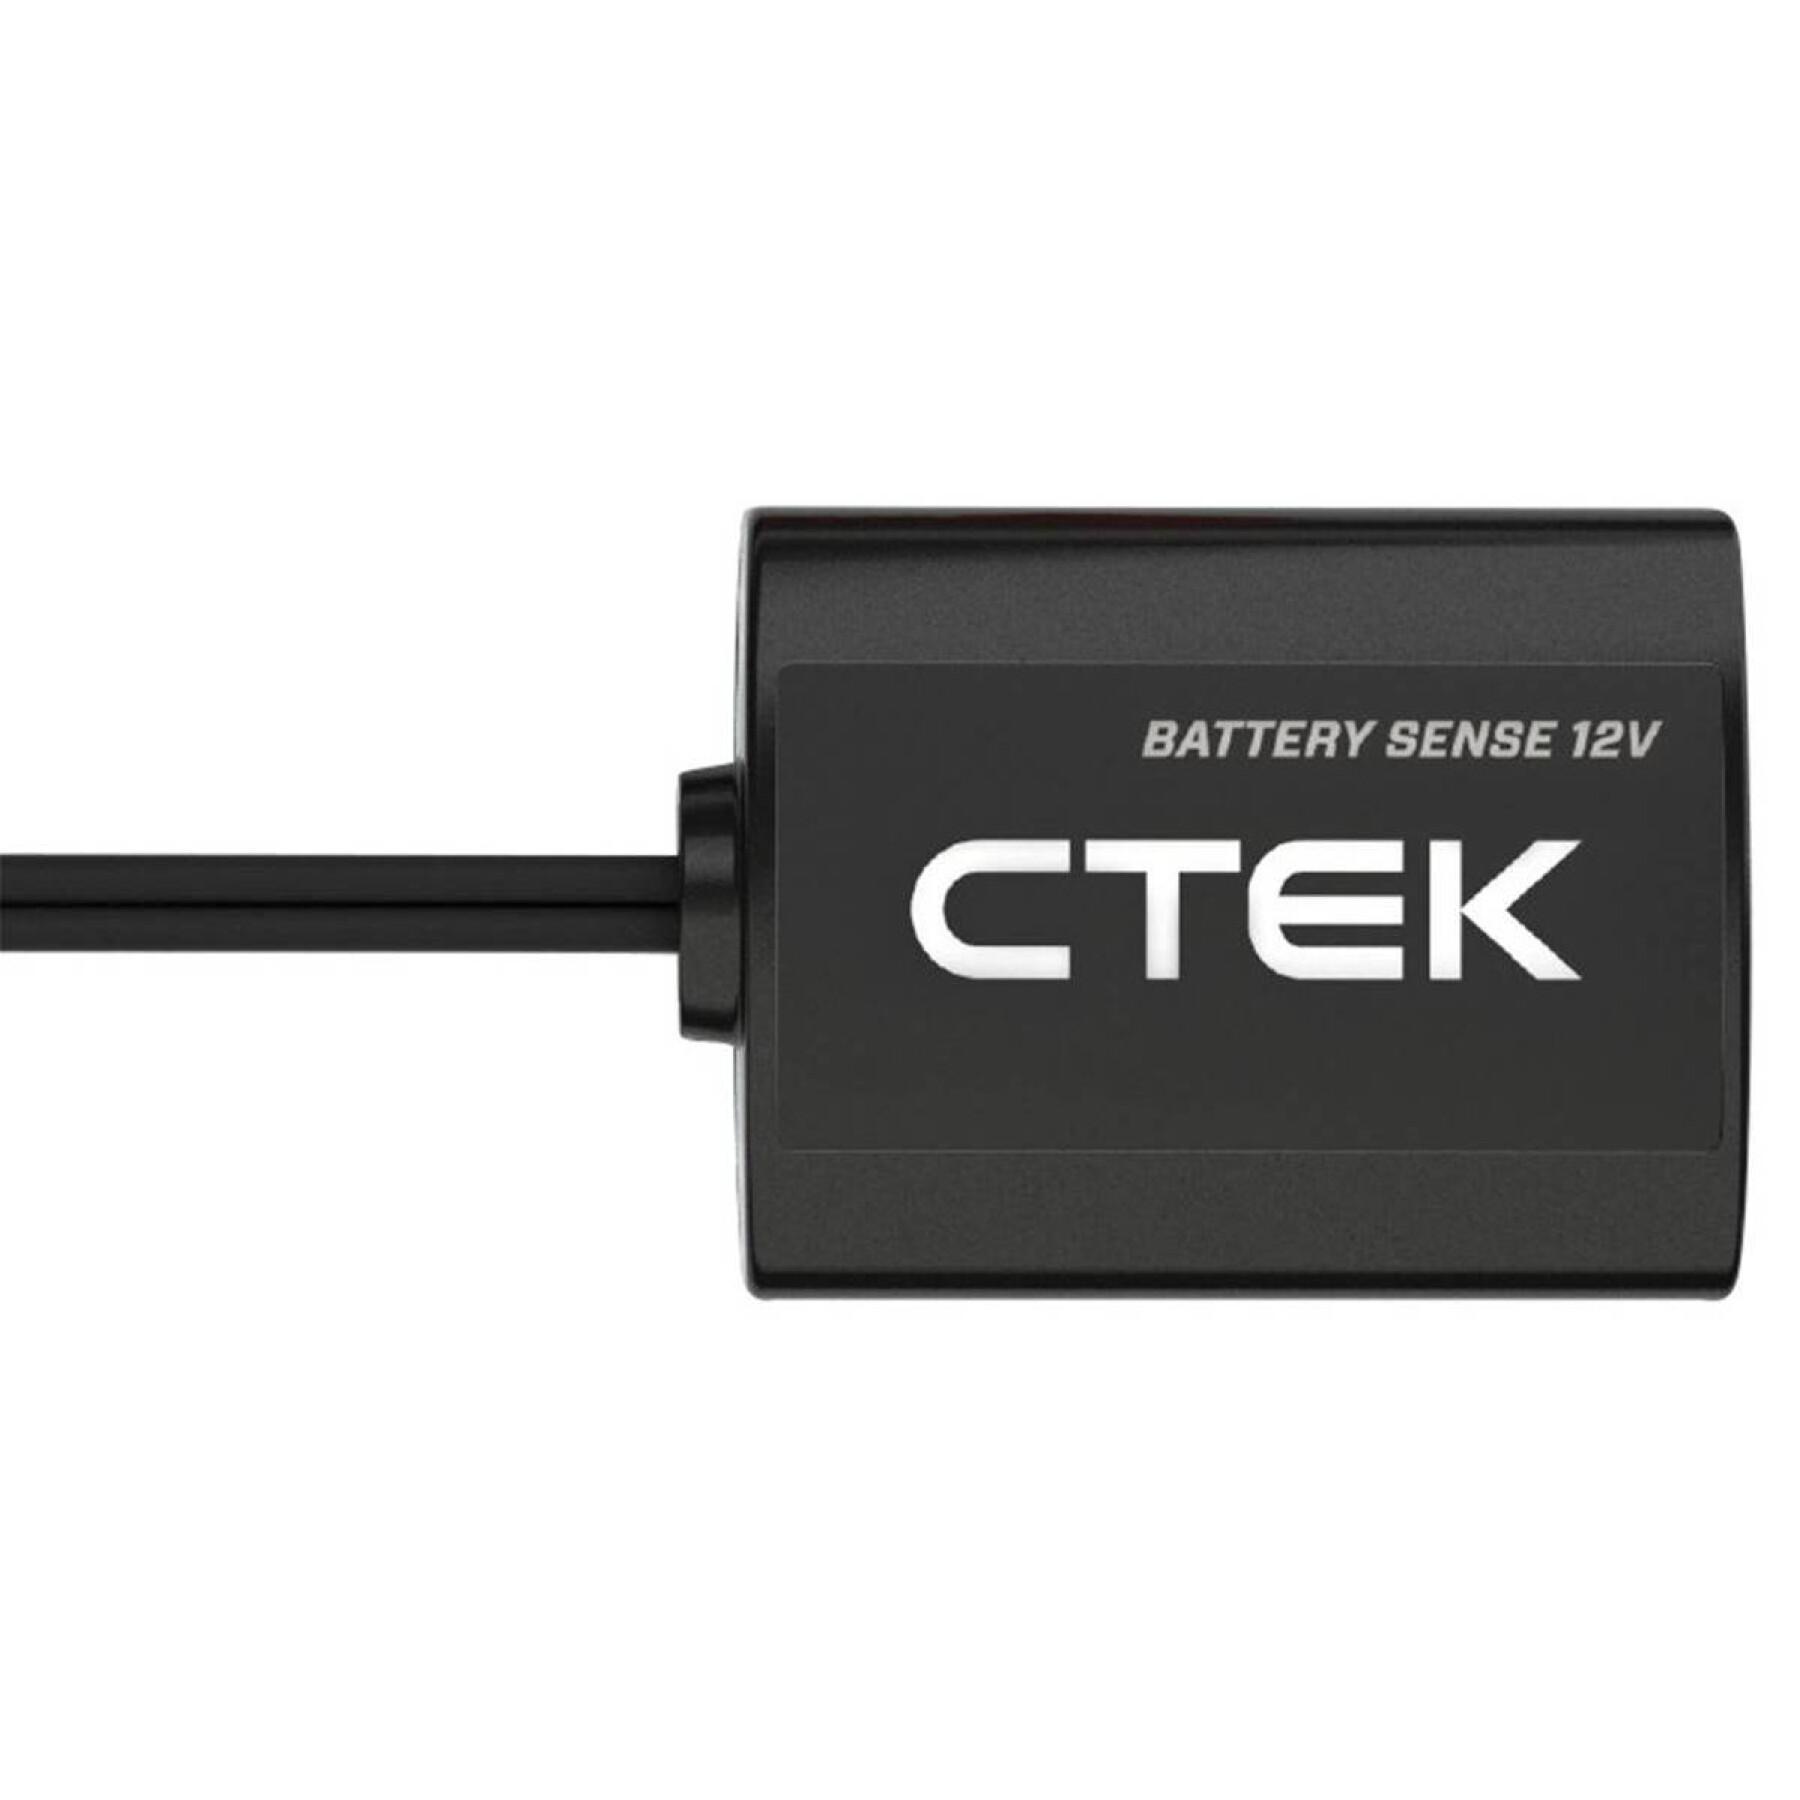 Carregador de bateria Ctek Sense